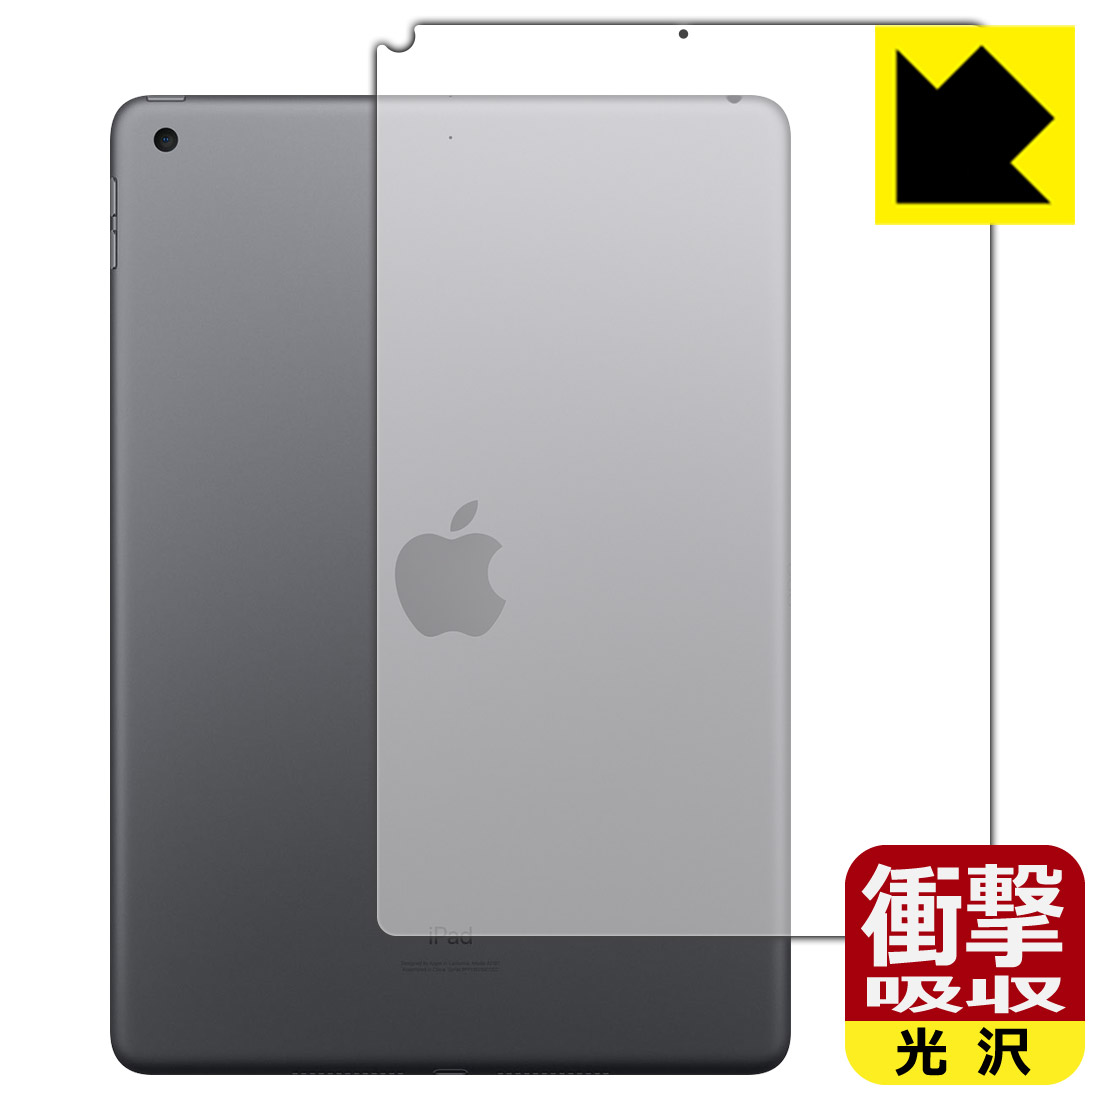 衝撃吸収【光沢】保護フィルム iPad (第9世代・2021年発売モデル) 背面のみ 【Wi-Fiモデル】 日本製 自社製造直販